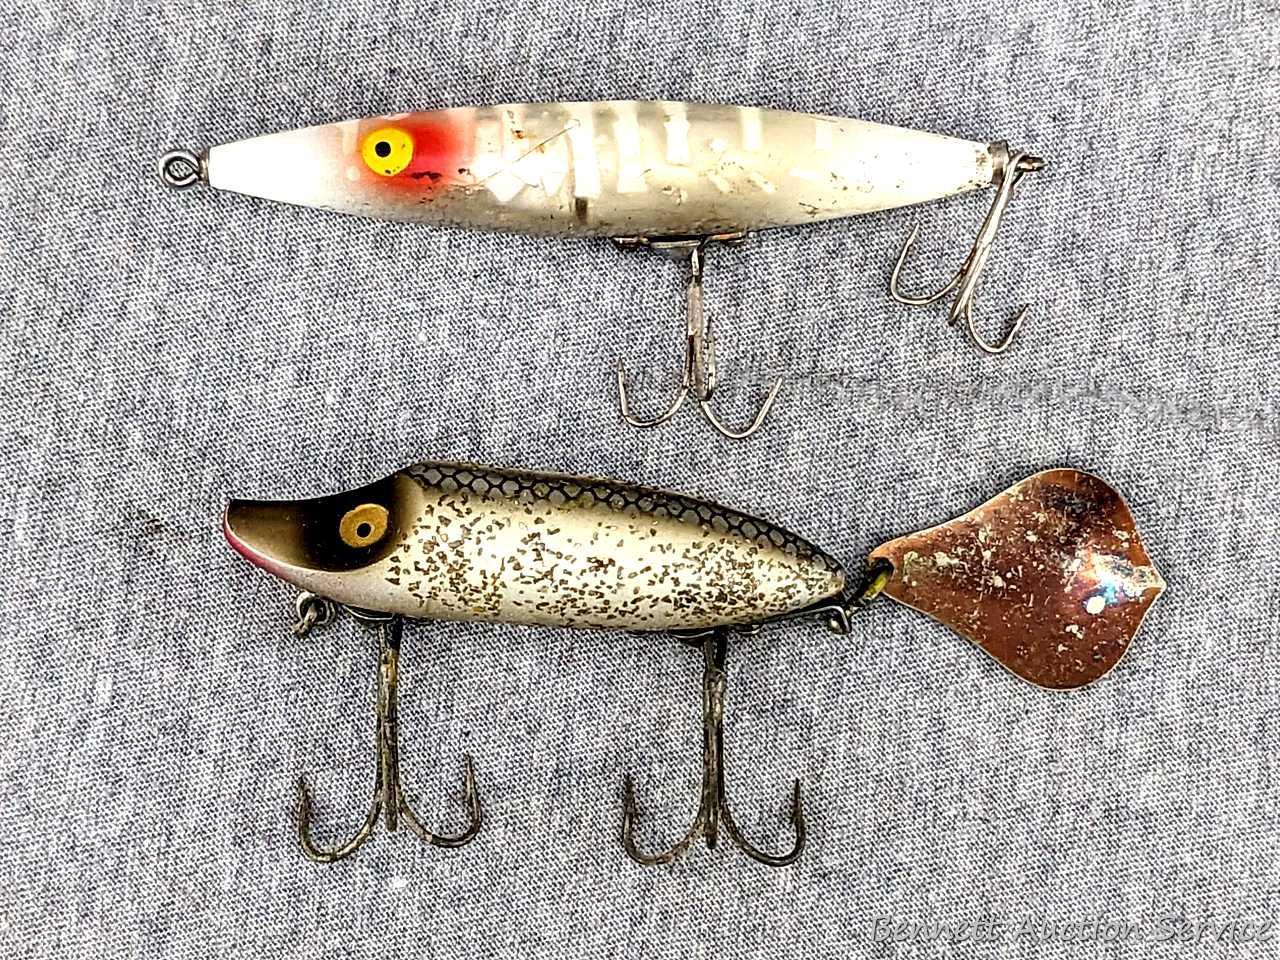 Two vintage Heddon fishing lures incl Heddon